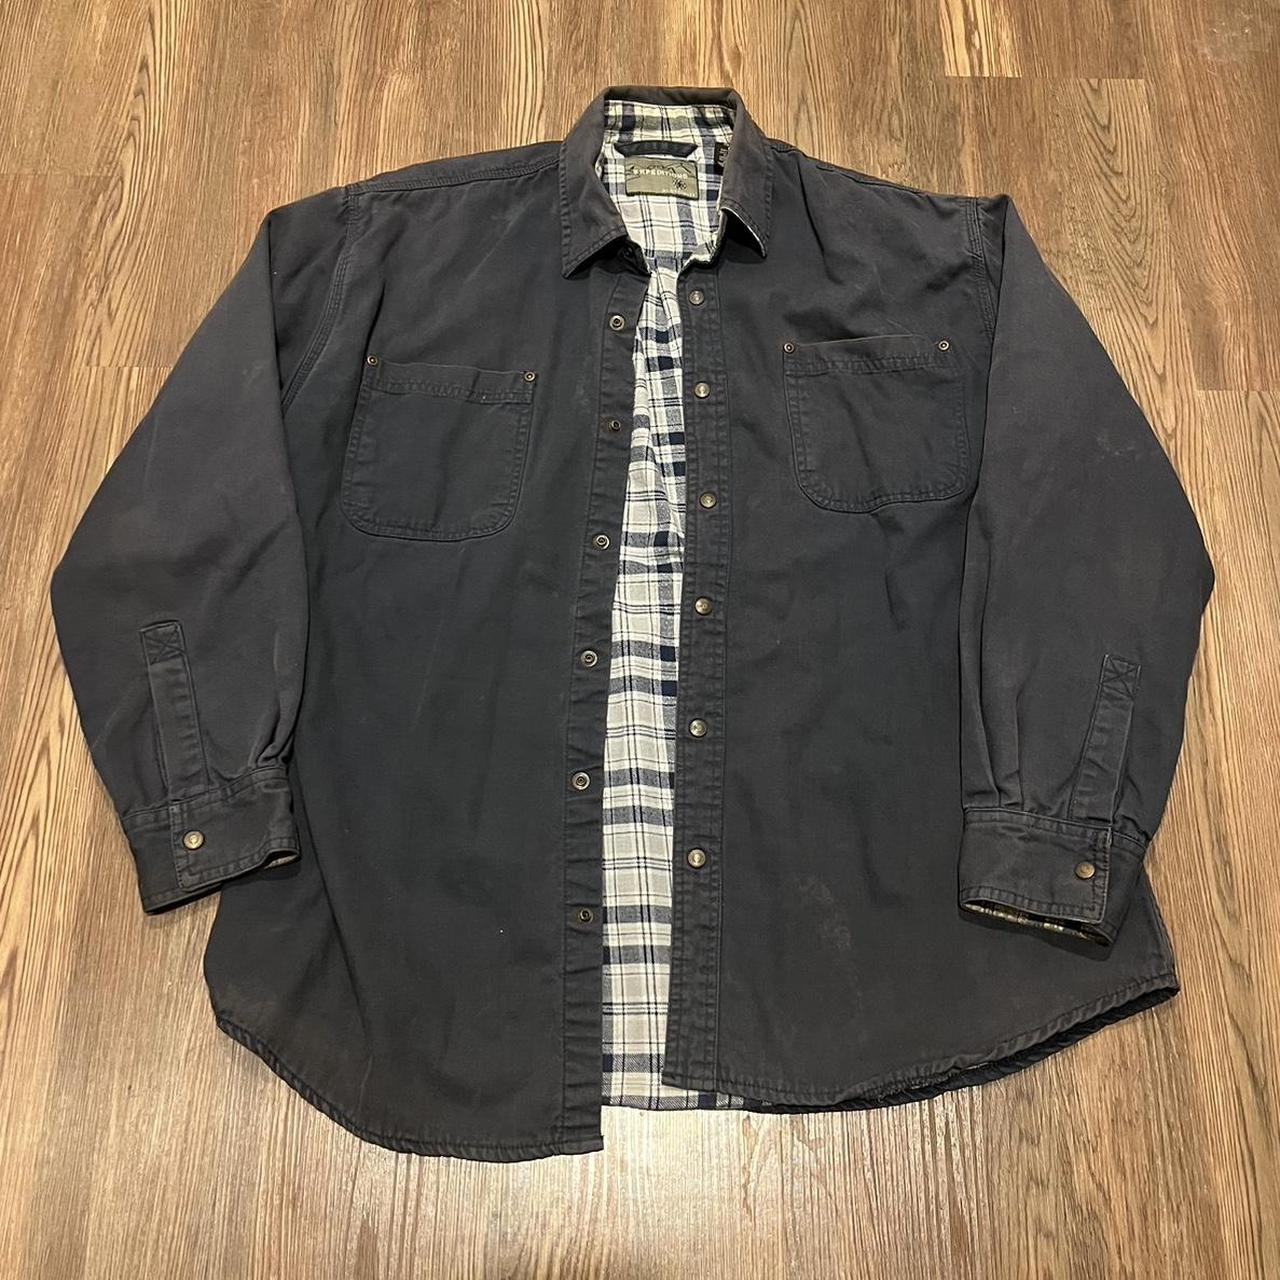 Vintage wrangler workwear jacket Size Large - Depop